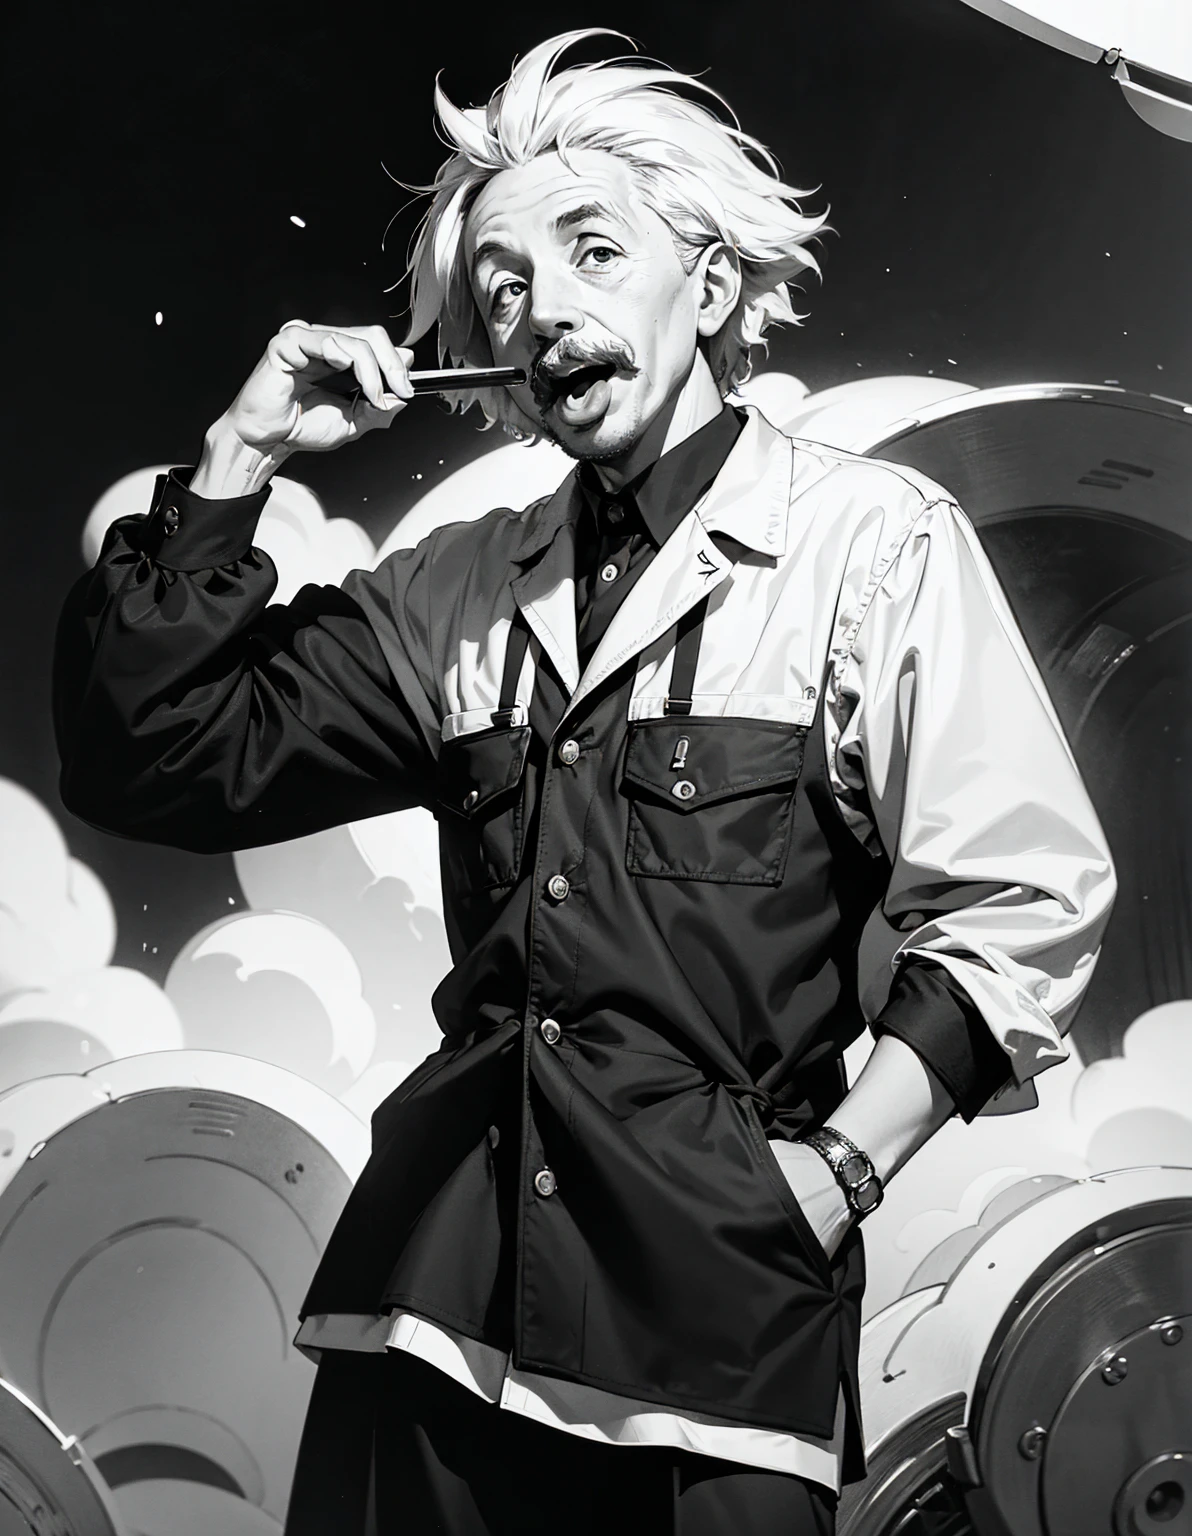 这张著名的黑白照片上，爱因斯坦伸出了舌头、它 is widely known for capturing his humorous and human side.。这张照片显示、这张照片是在爱因斯坦拍摄的&#39;1951 年 72 岁生日.、这与学者的严谨形象形成了鲜明的对比.。他独特的幽默感、它&#39;都浓缩在这张照片里.。